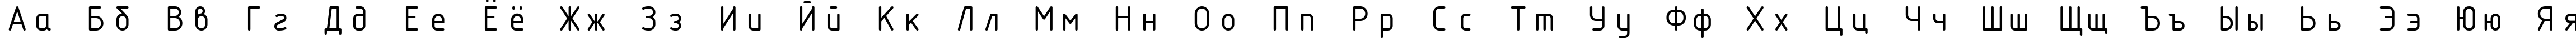 Пример написания русского алфавита шрифтом ISOCTEUR